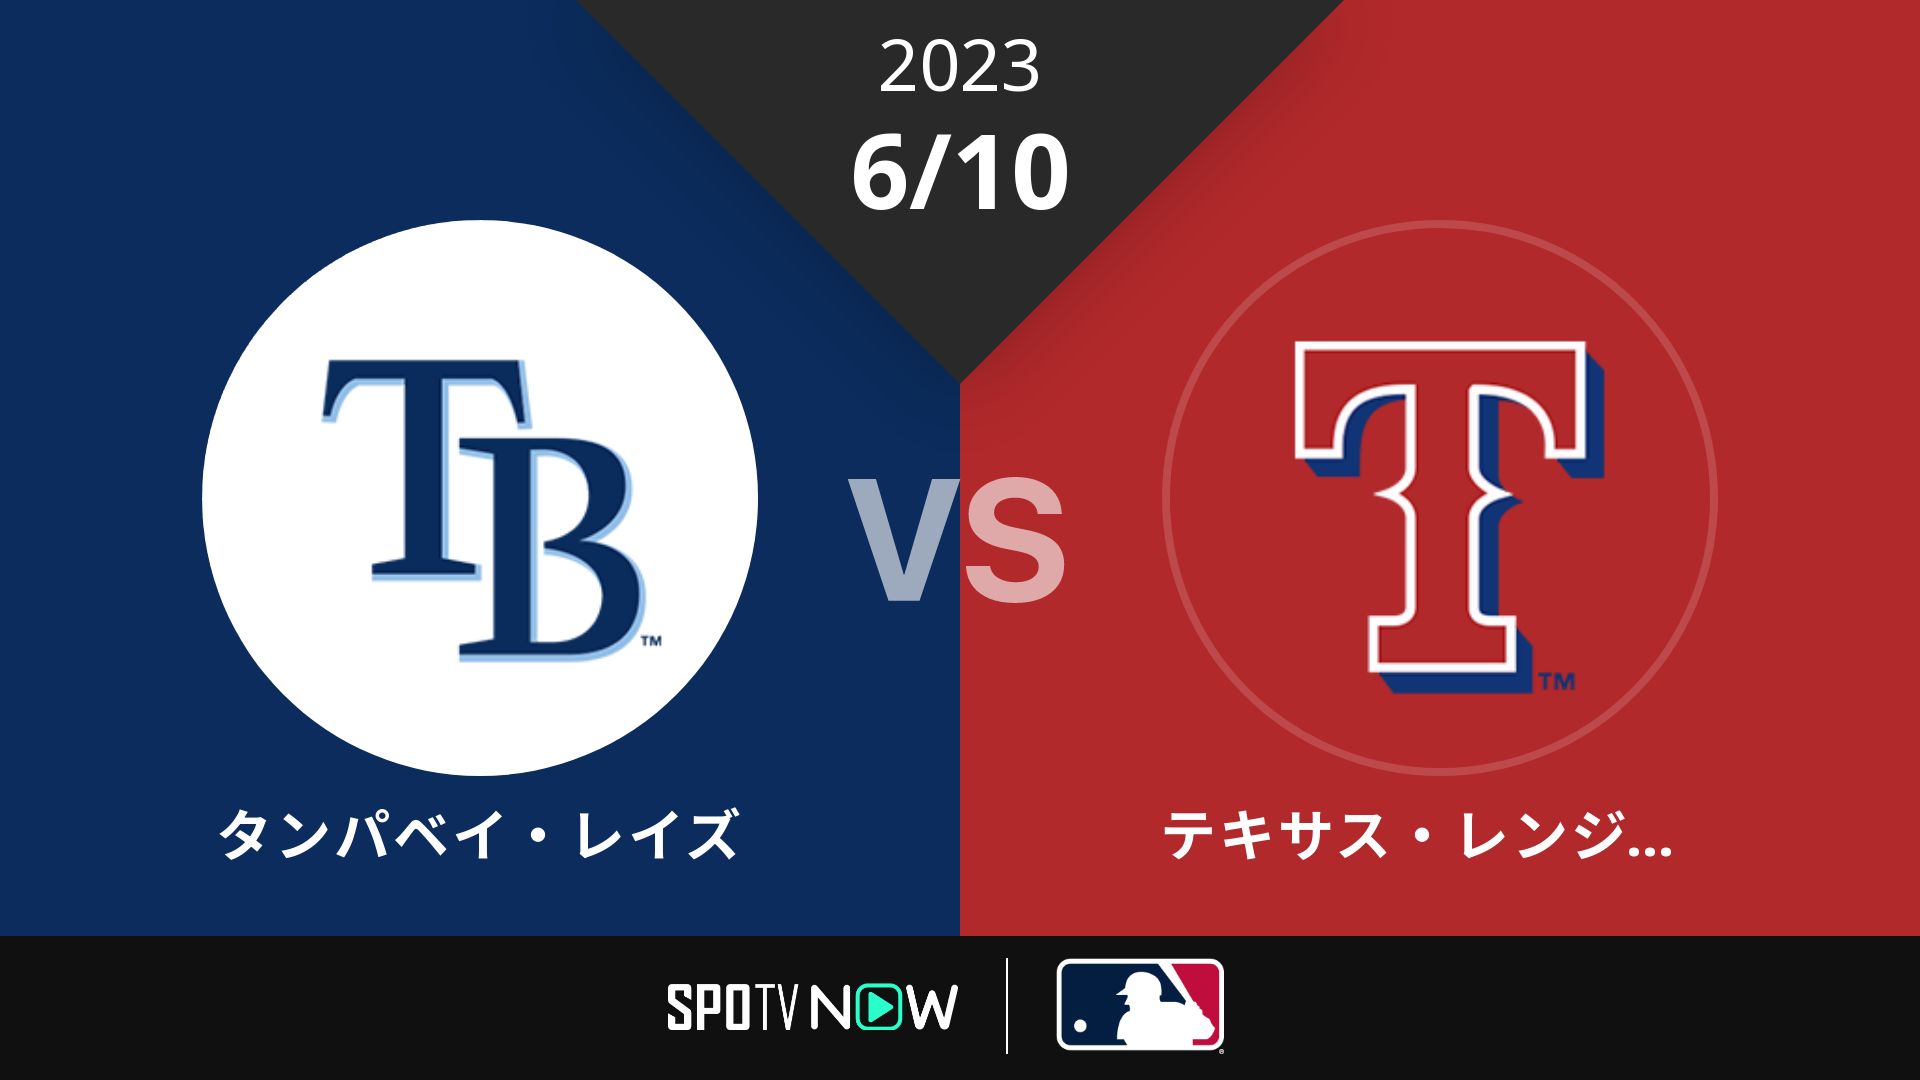 2023/6/10 レイズ vs レンジャーズ [MLB]